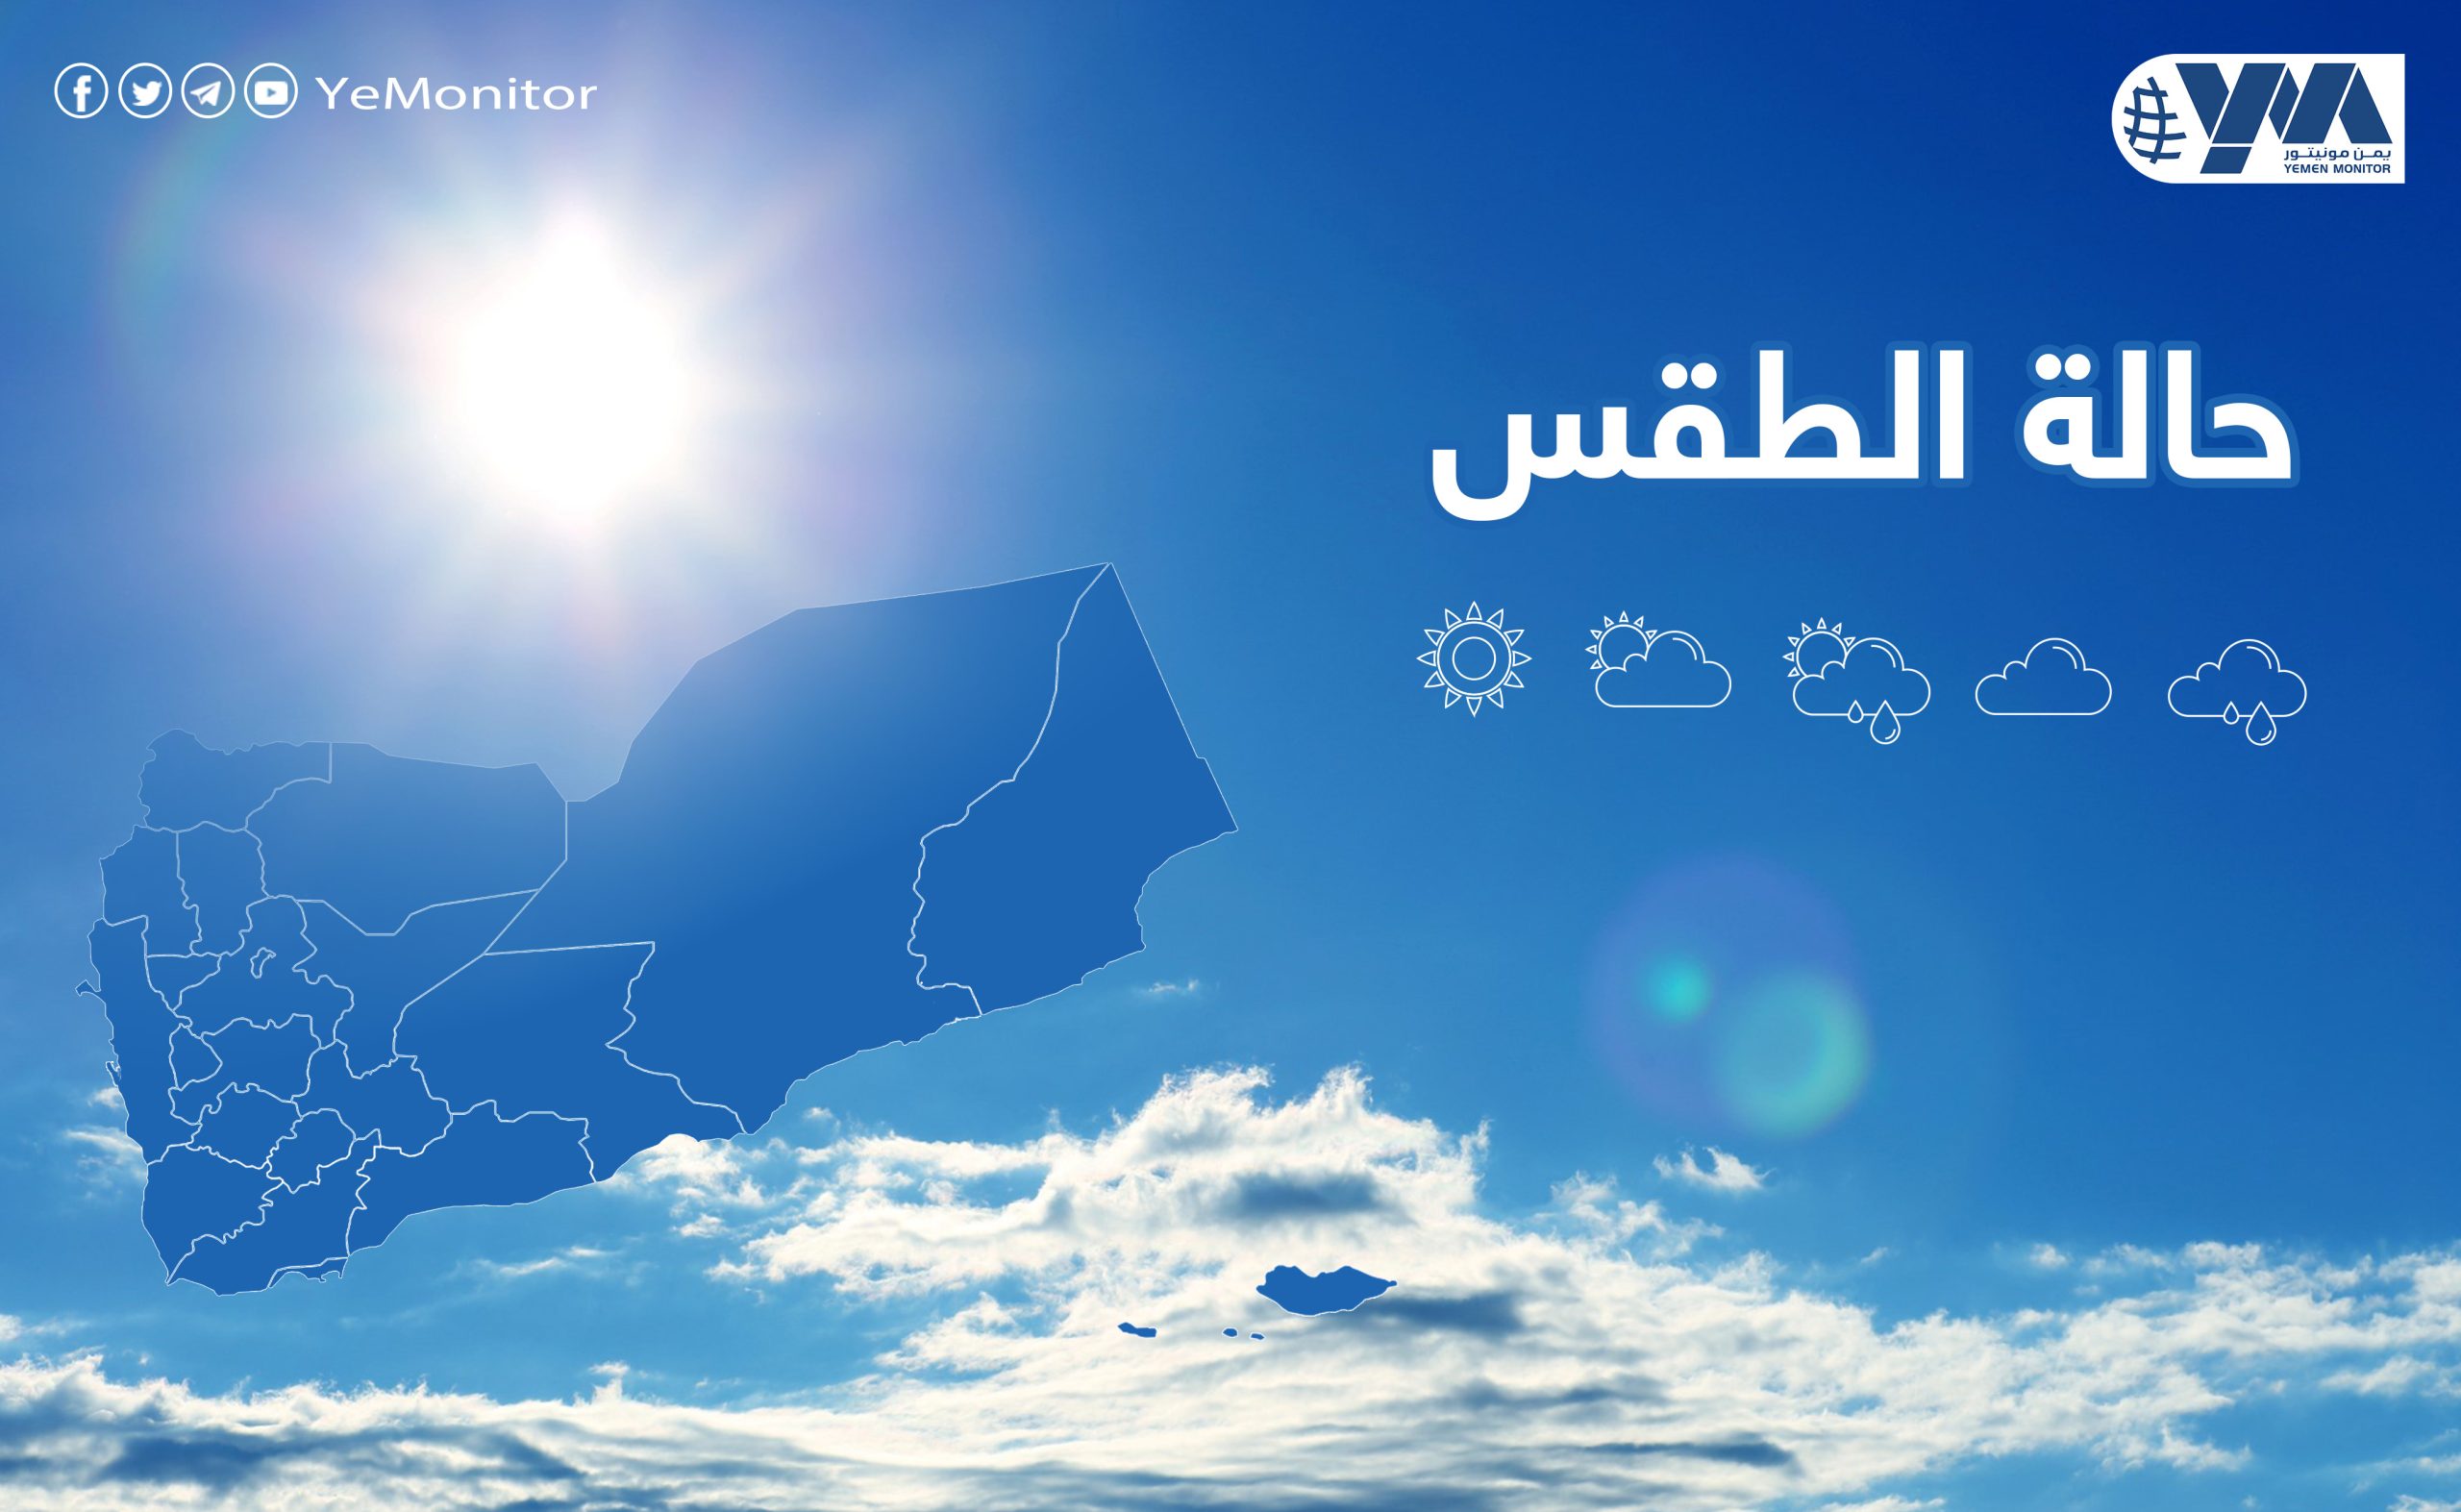 “الأرصاد اليمني” يتوقع أجواء باردة أثناء الليل والصباح الباكر في عدة محافظات